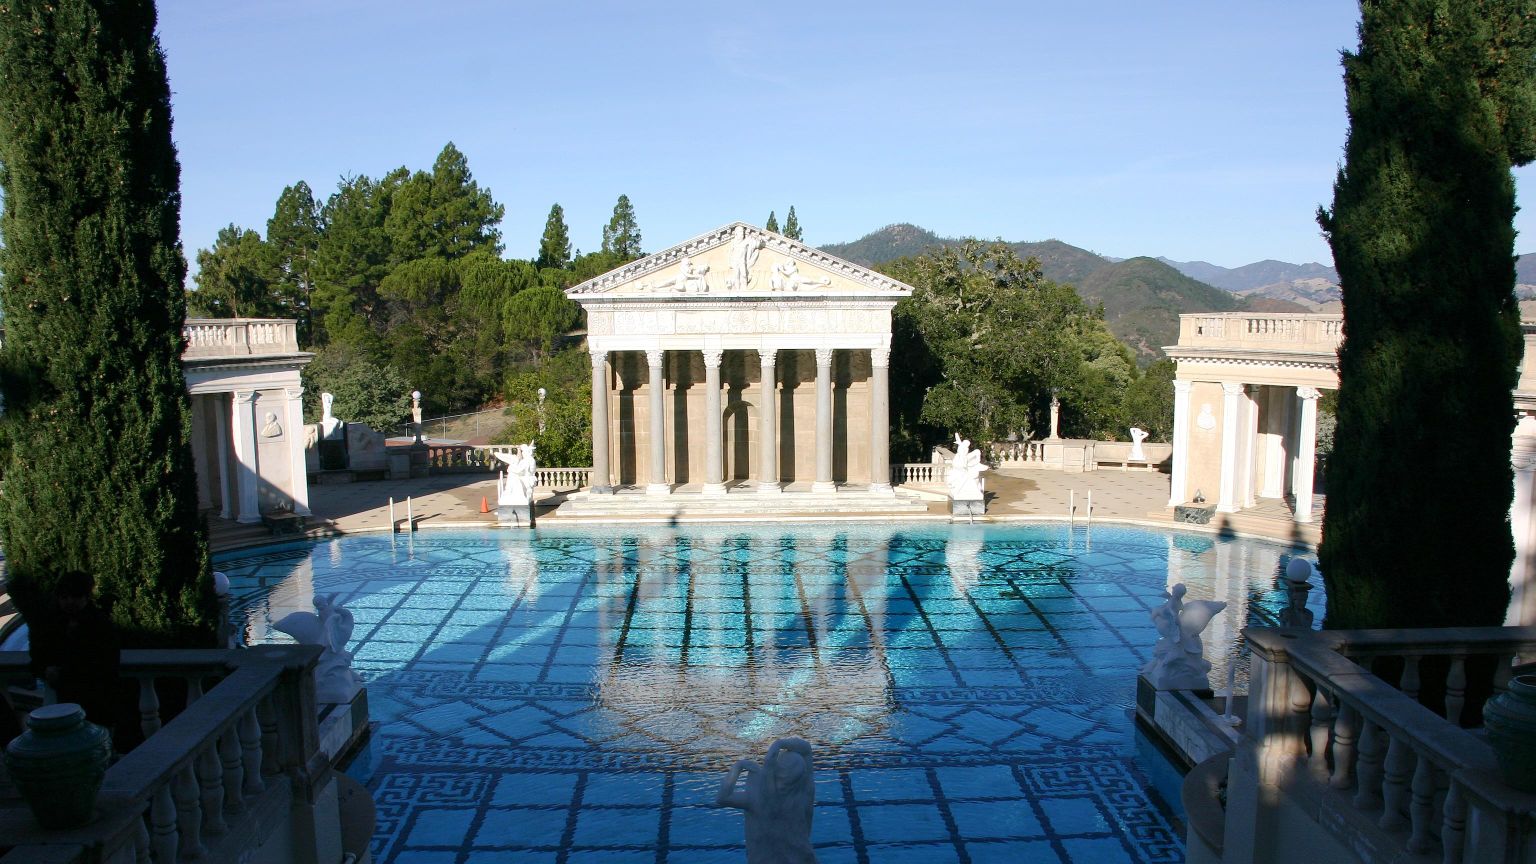 海神泳池（Neptune Pool），是典型的古希腊风格，呈椭圆形，面积超过八十平方英尺，全部用大理